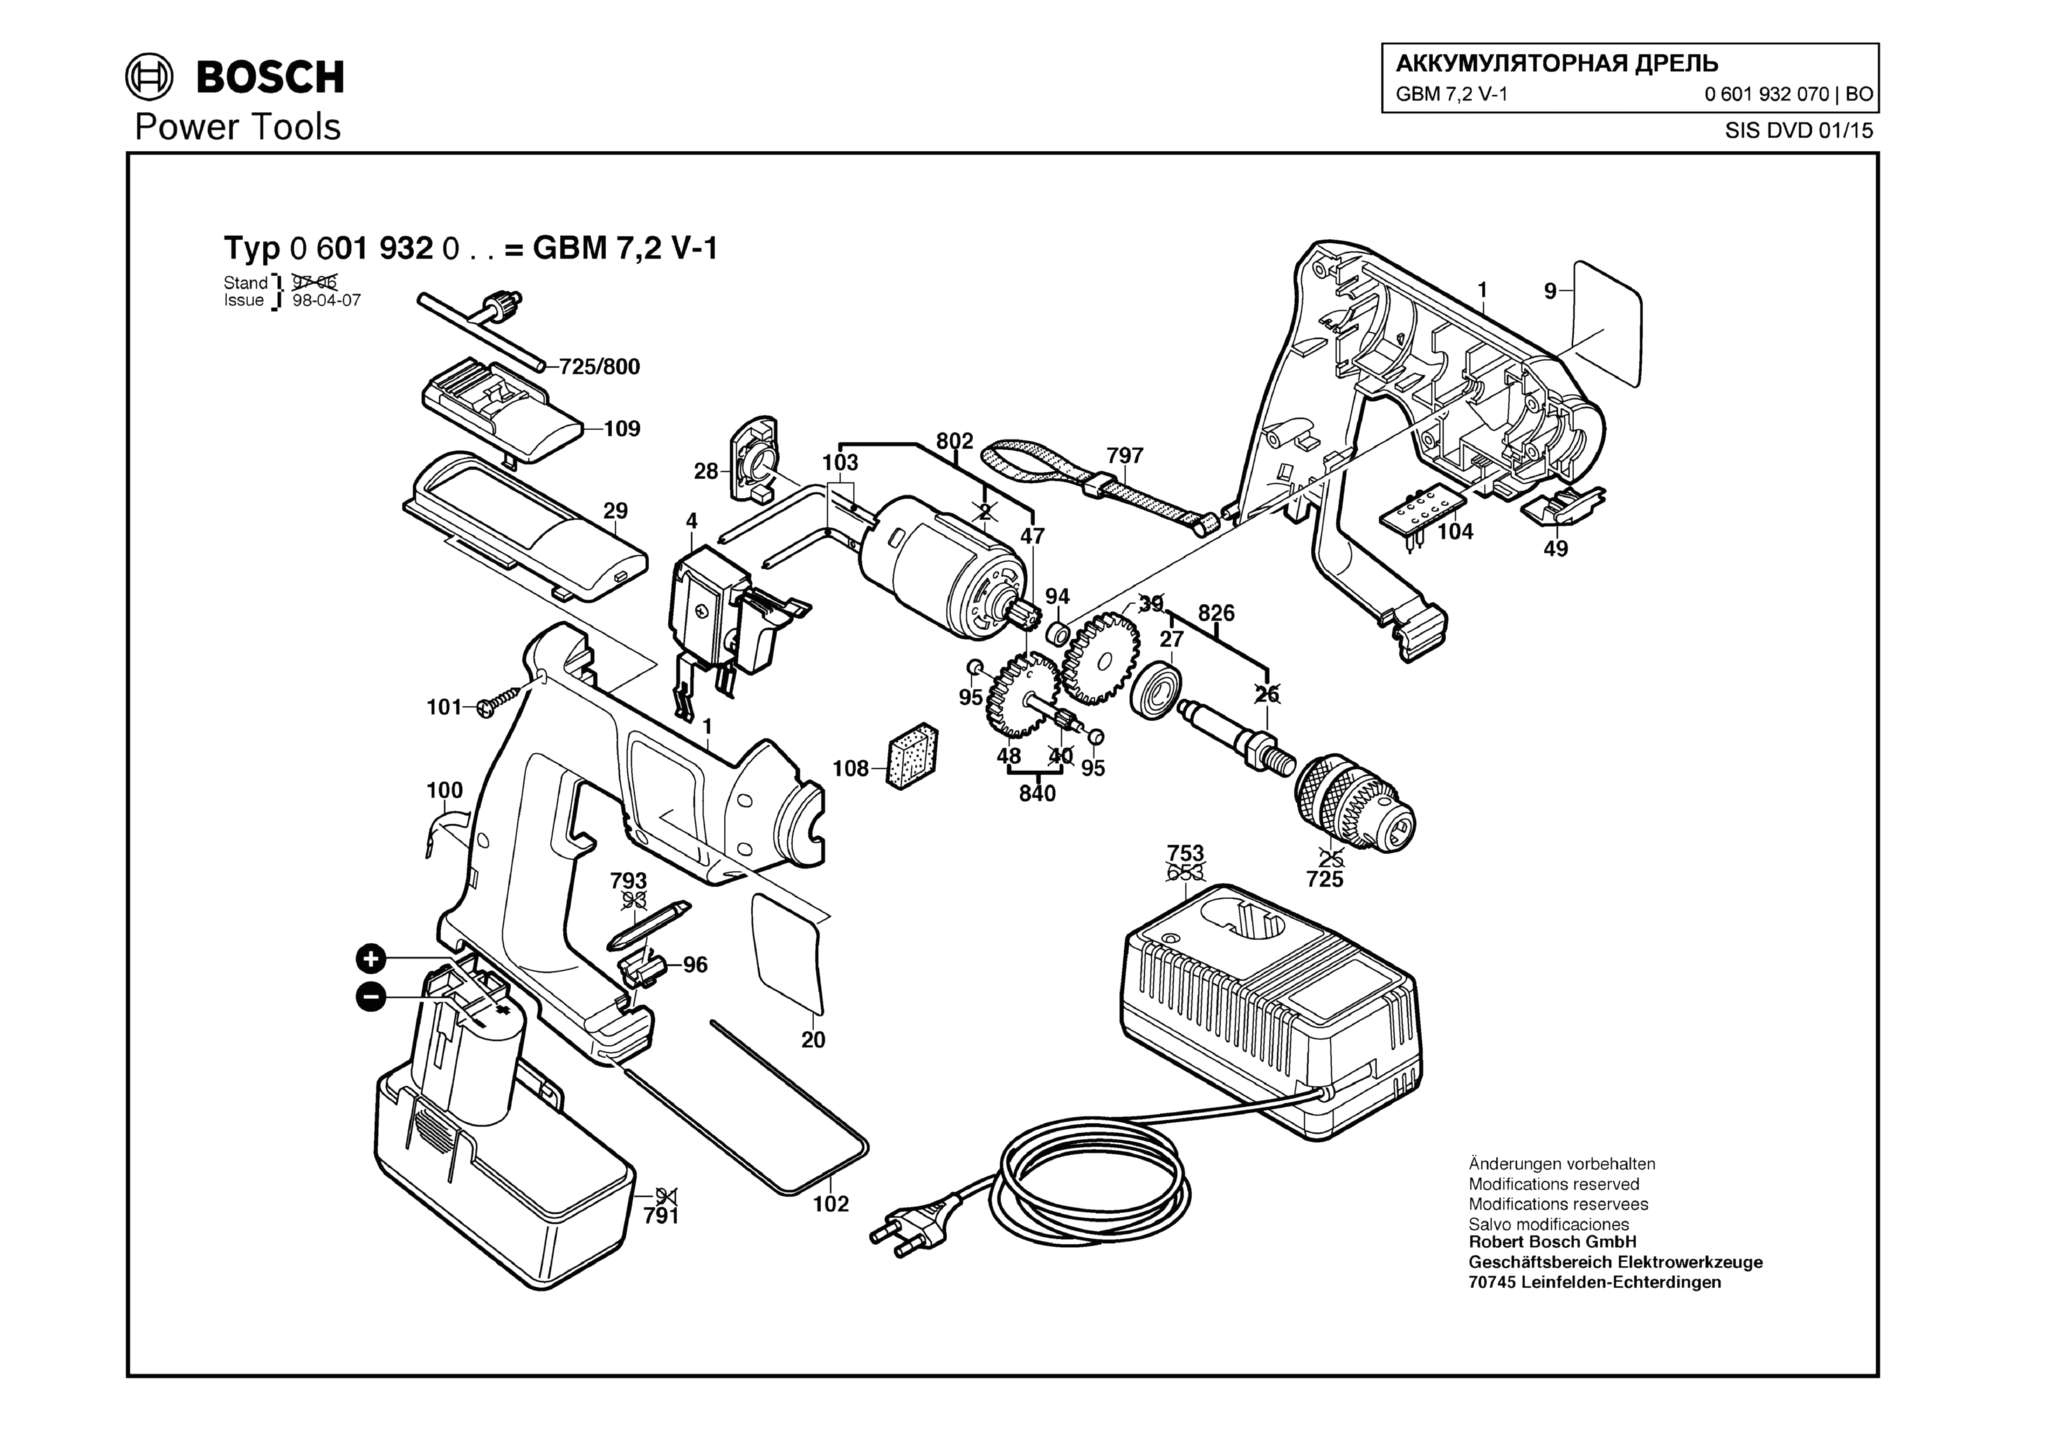 Запчасти, схема и деталировка Bosch GBM 7,2 V-1 (ТИП 0601932070)